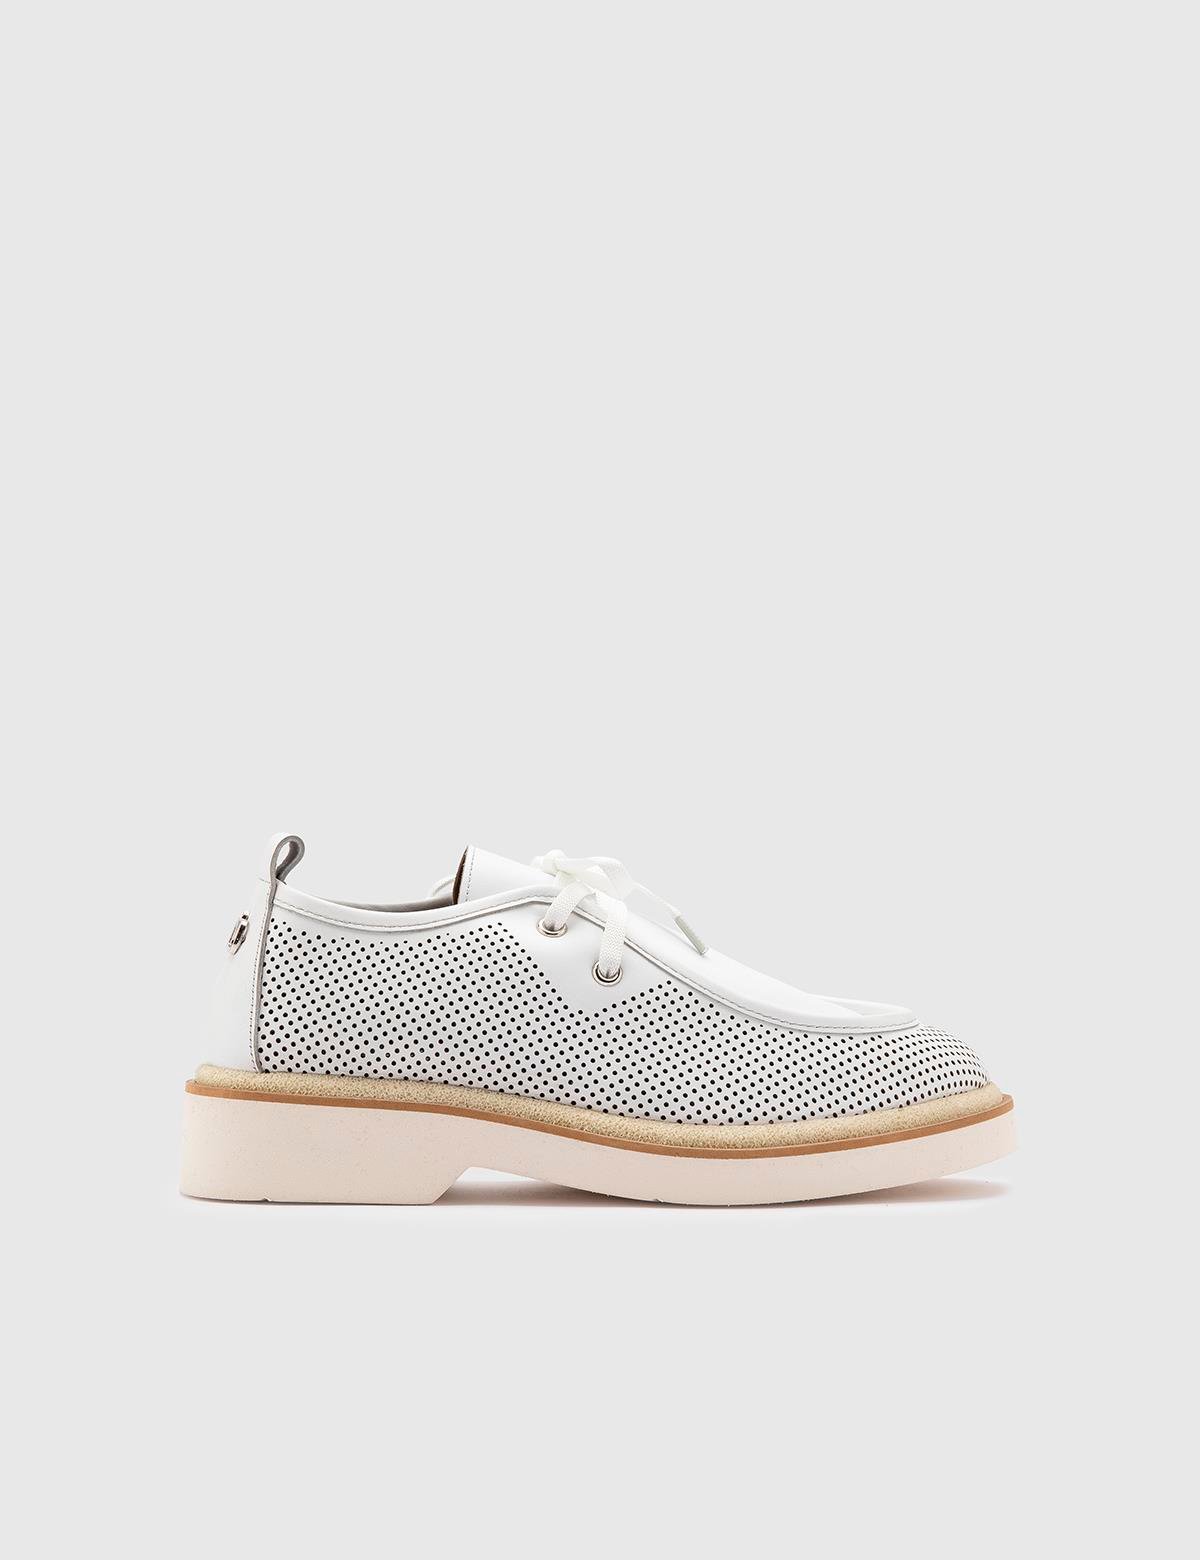 Afsana Oxford-Schuhe für Damen aus weißem Leder